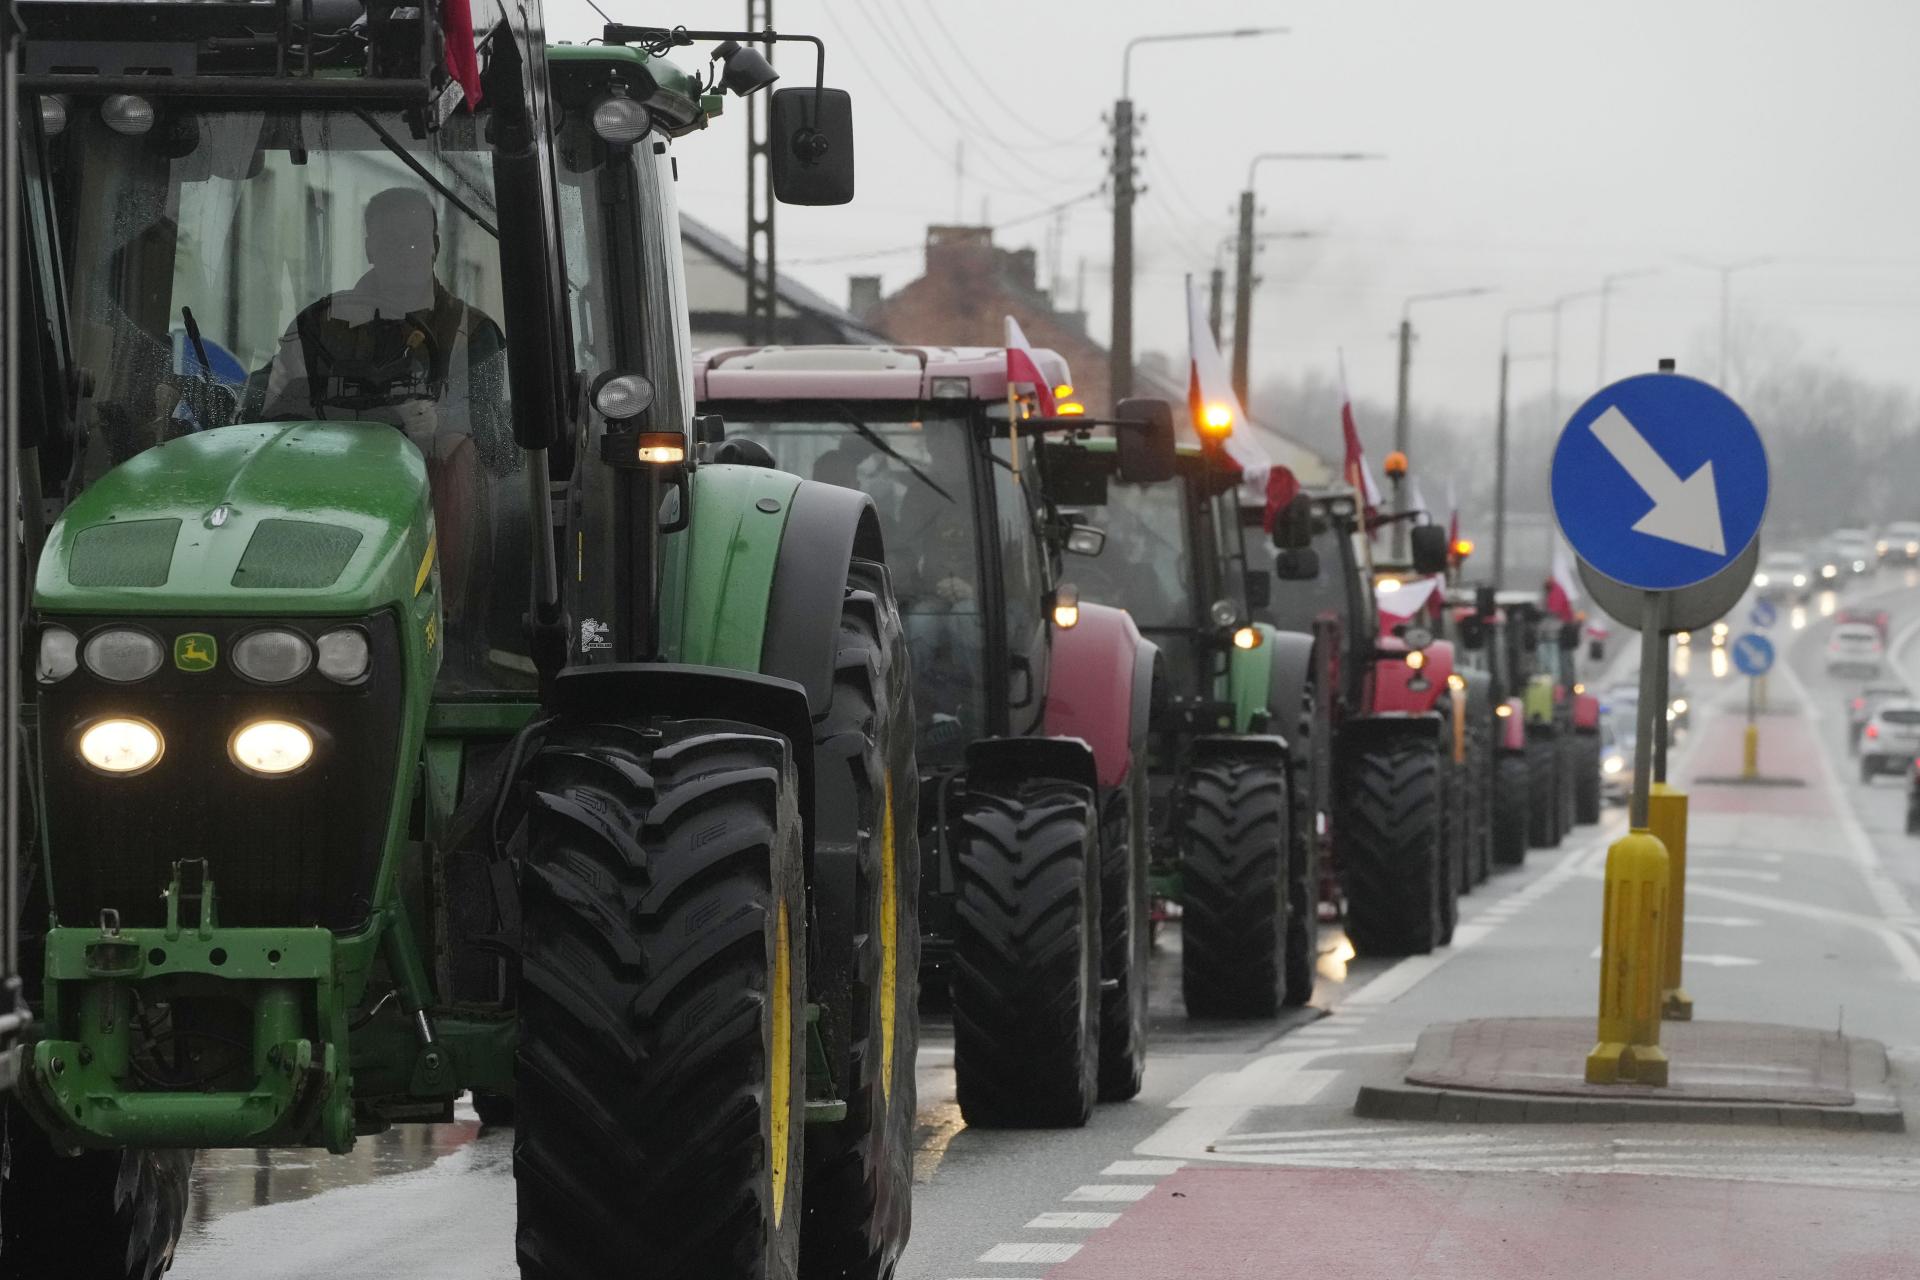 Poľskí poľnohospodári plánujú štrajk a blokádu hraničných priechodov. Únia a konkurencia ich obmedzujú